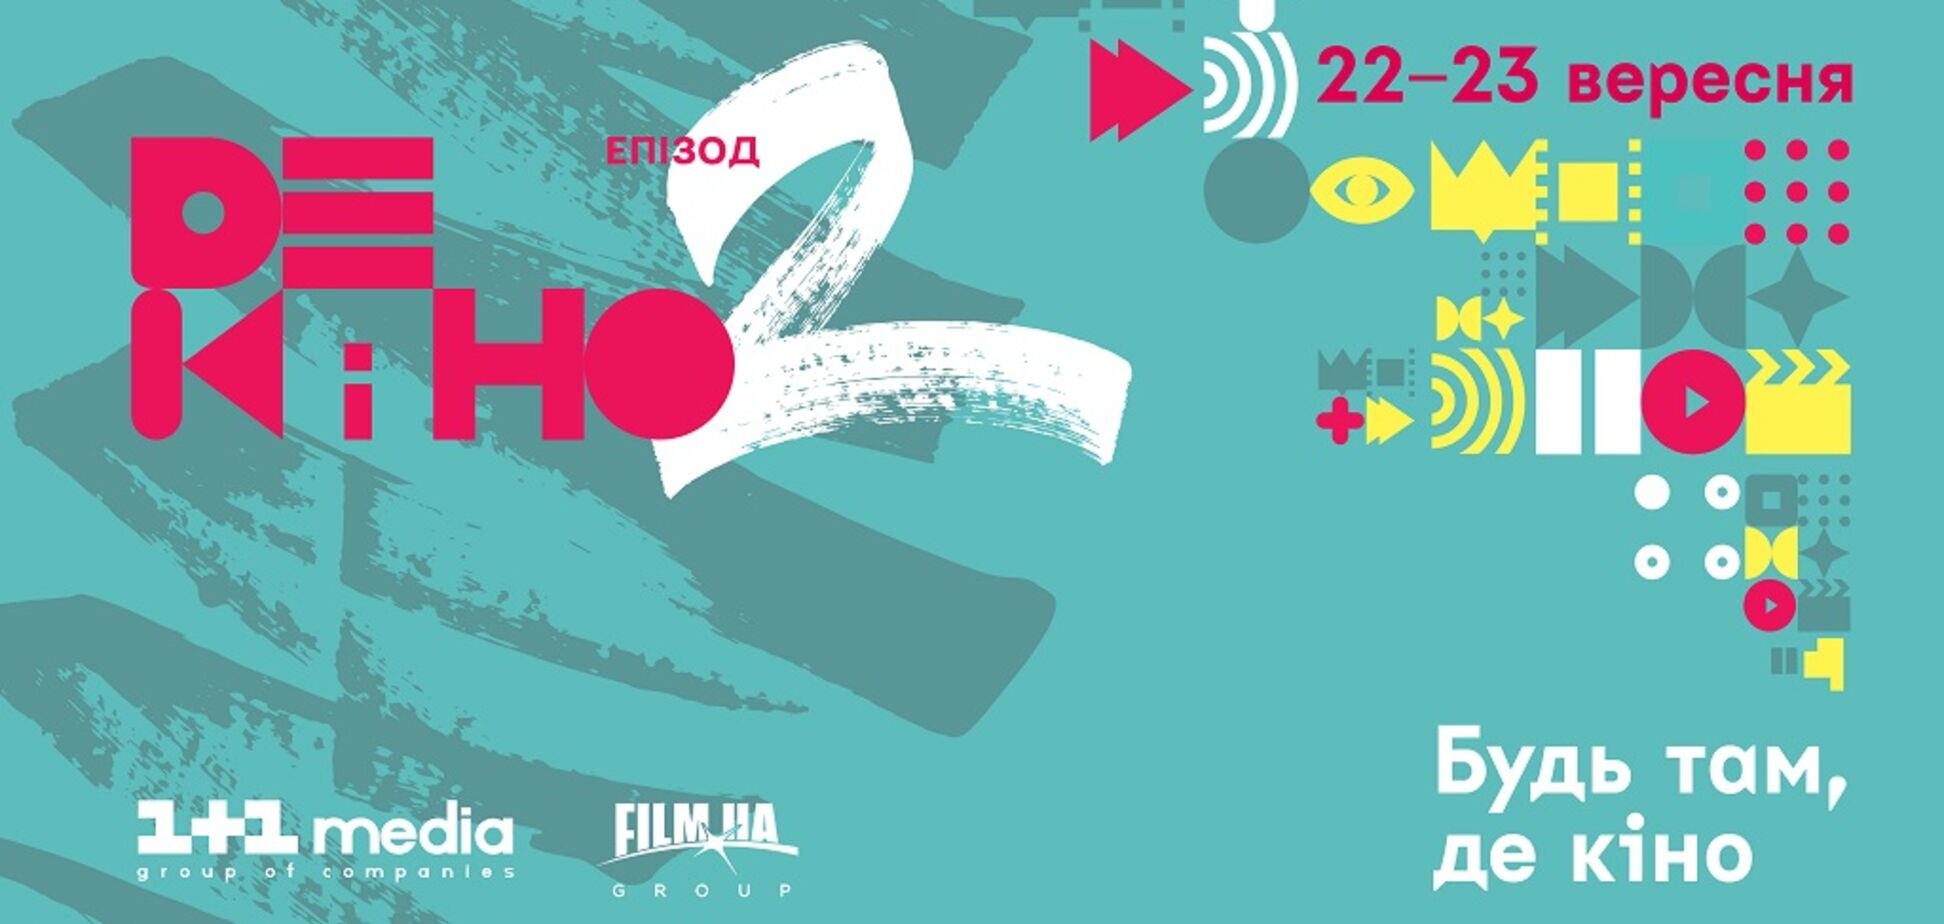 Претендент на ОСКАР-2017: назван ключевой спикер первого дня фестиваля Де кино